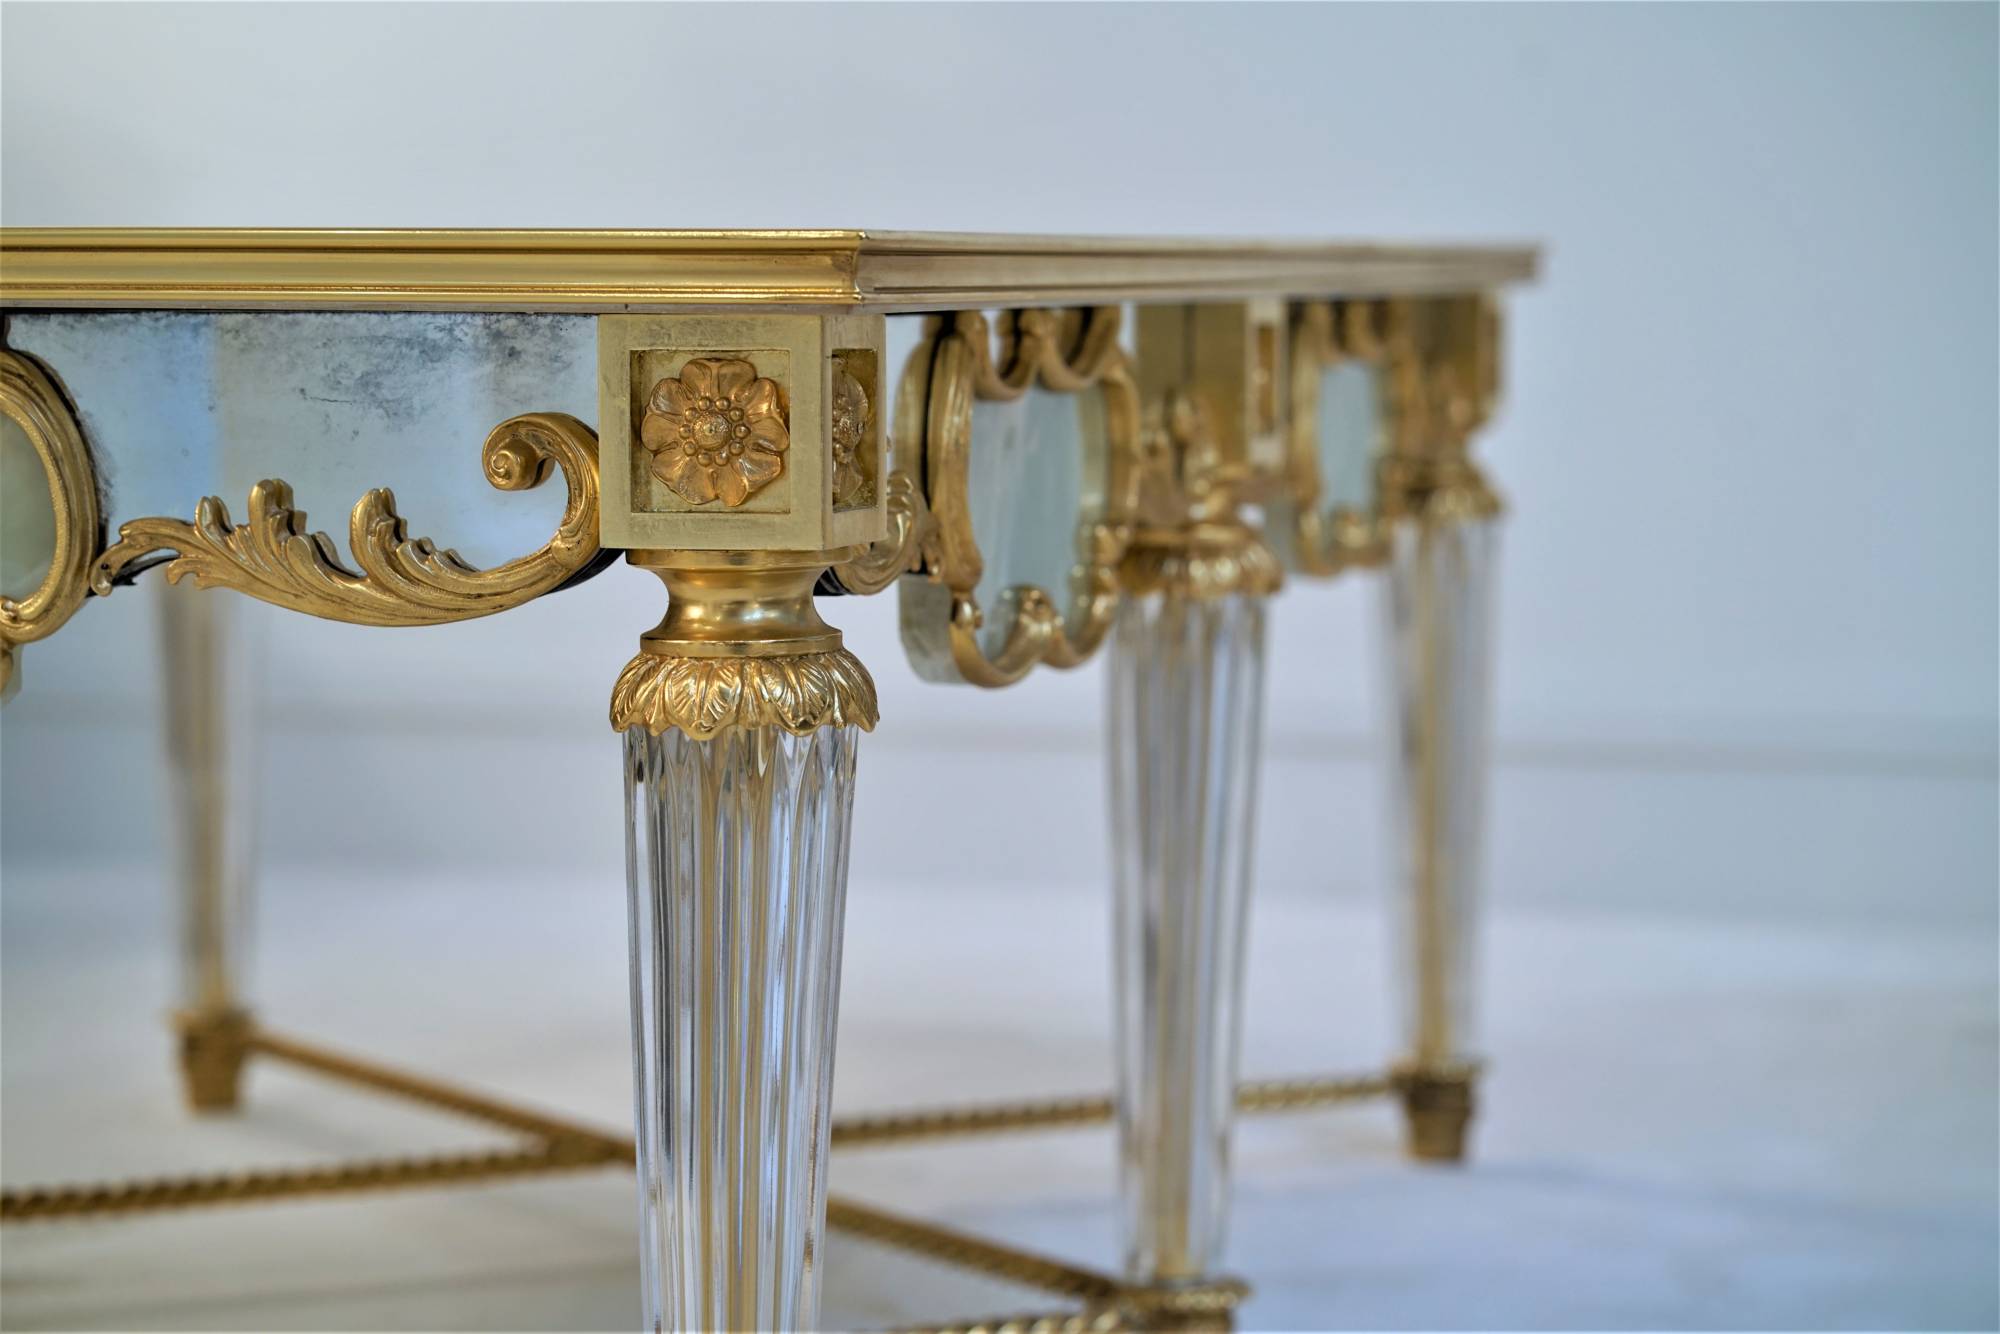 ART. 2192 – C.G. Capelletti Italian Luxury Classic Small tables. Made in Italy classic interior design